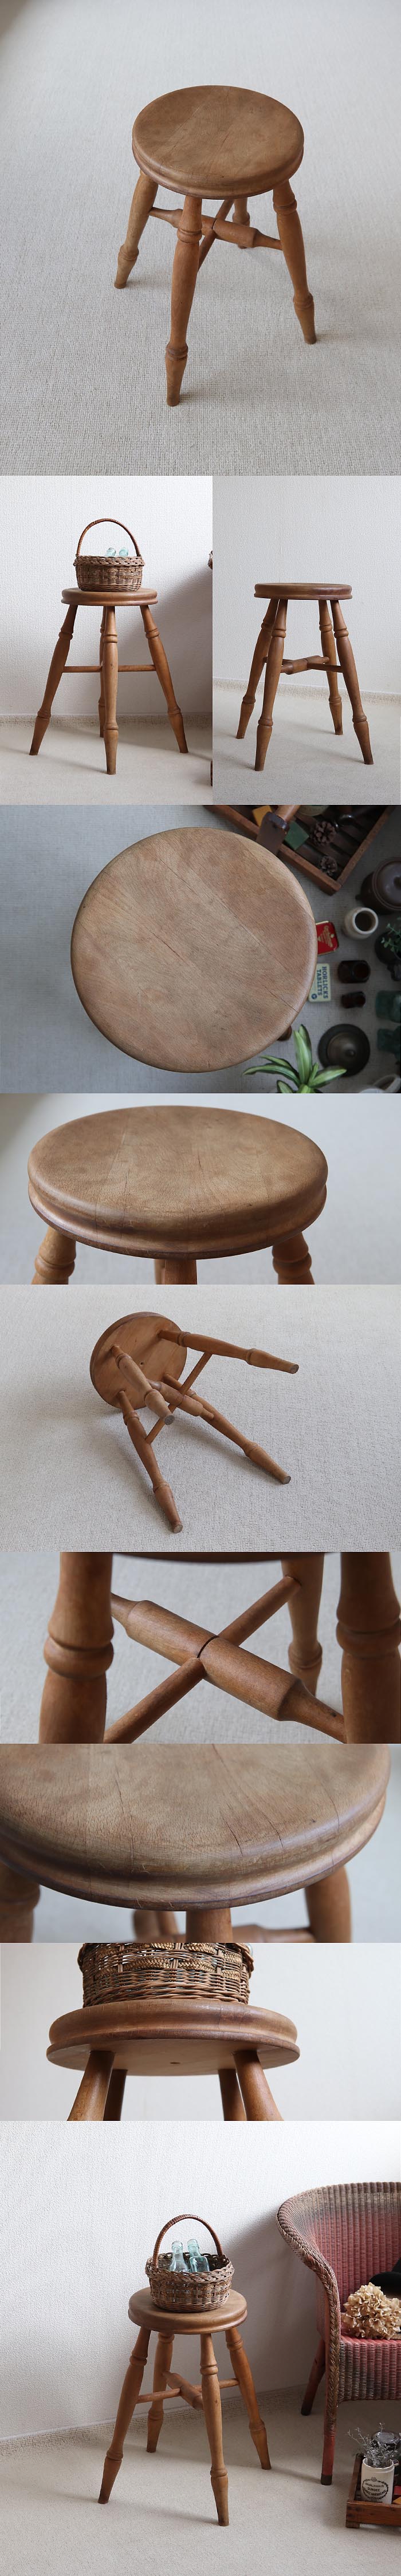 イギリス アンティーク スツール 無垢材 丸椅子 ヴィンテージ ナチュラル 家具「飾り台にも」T-866